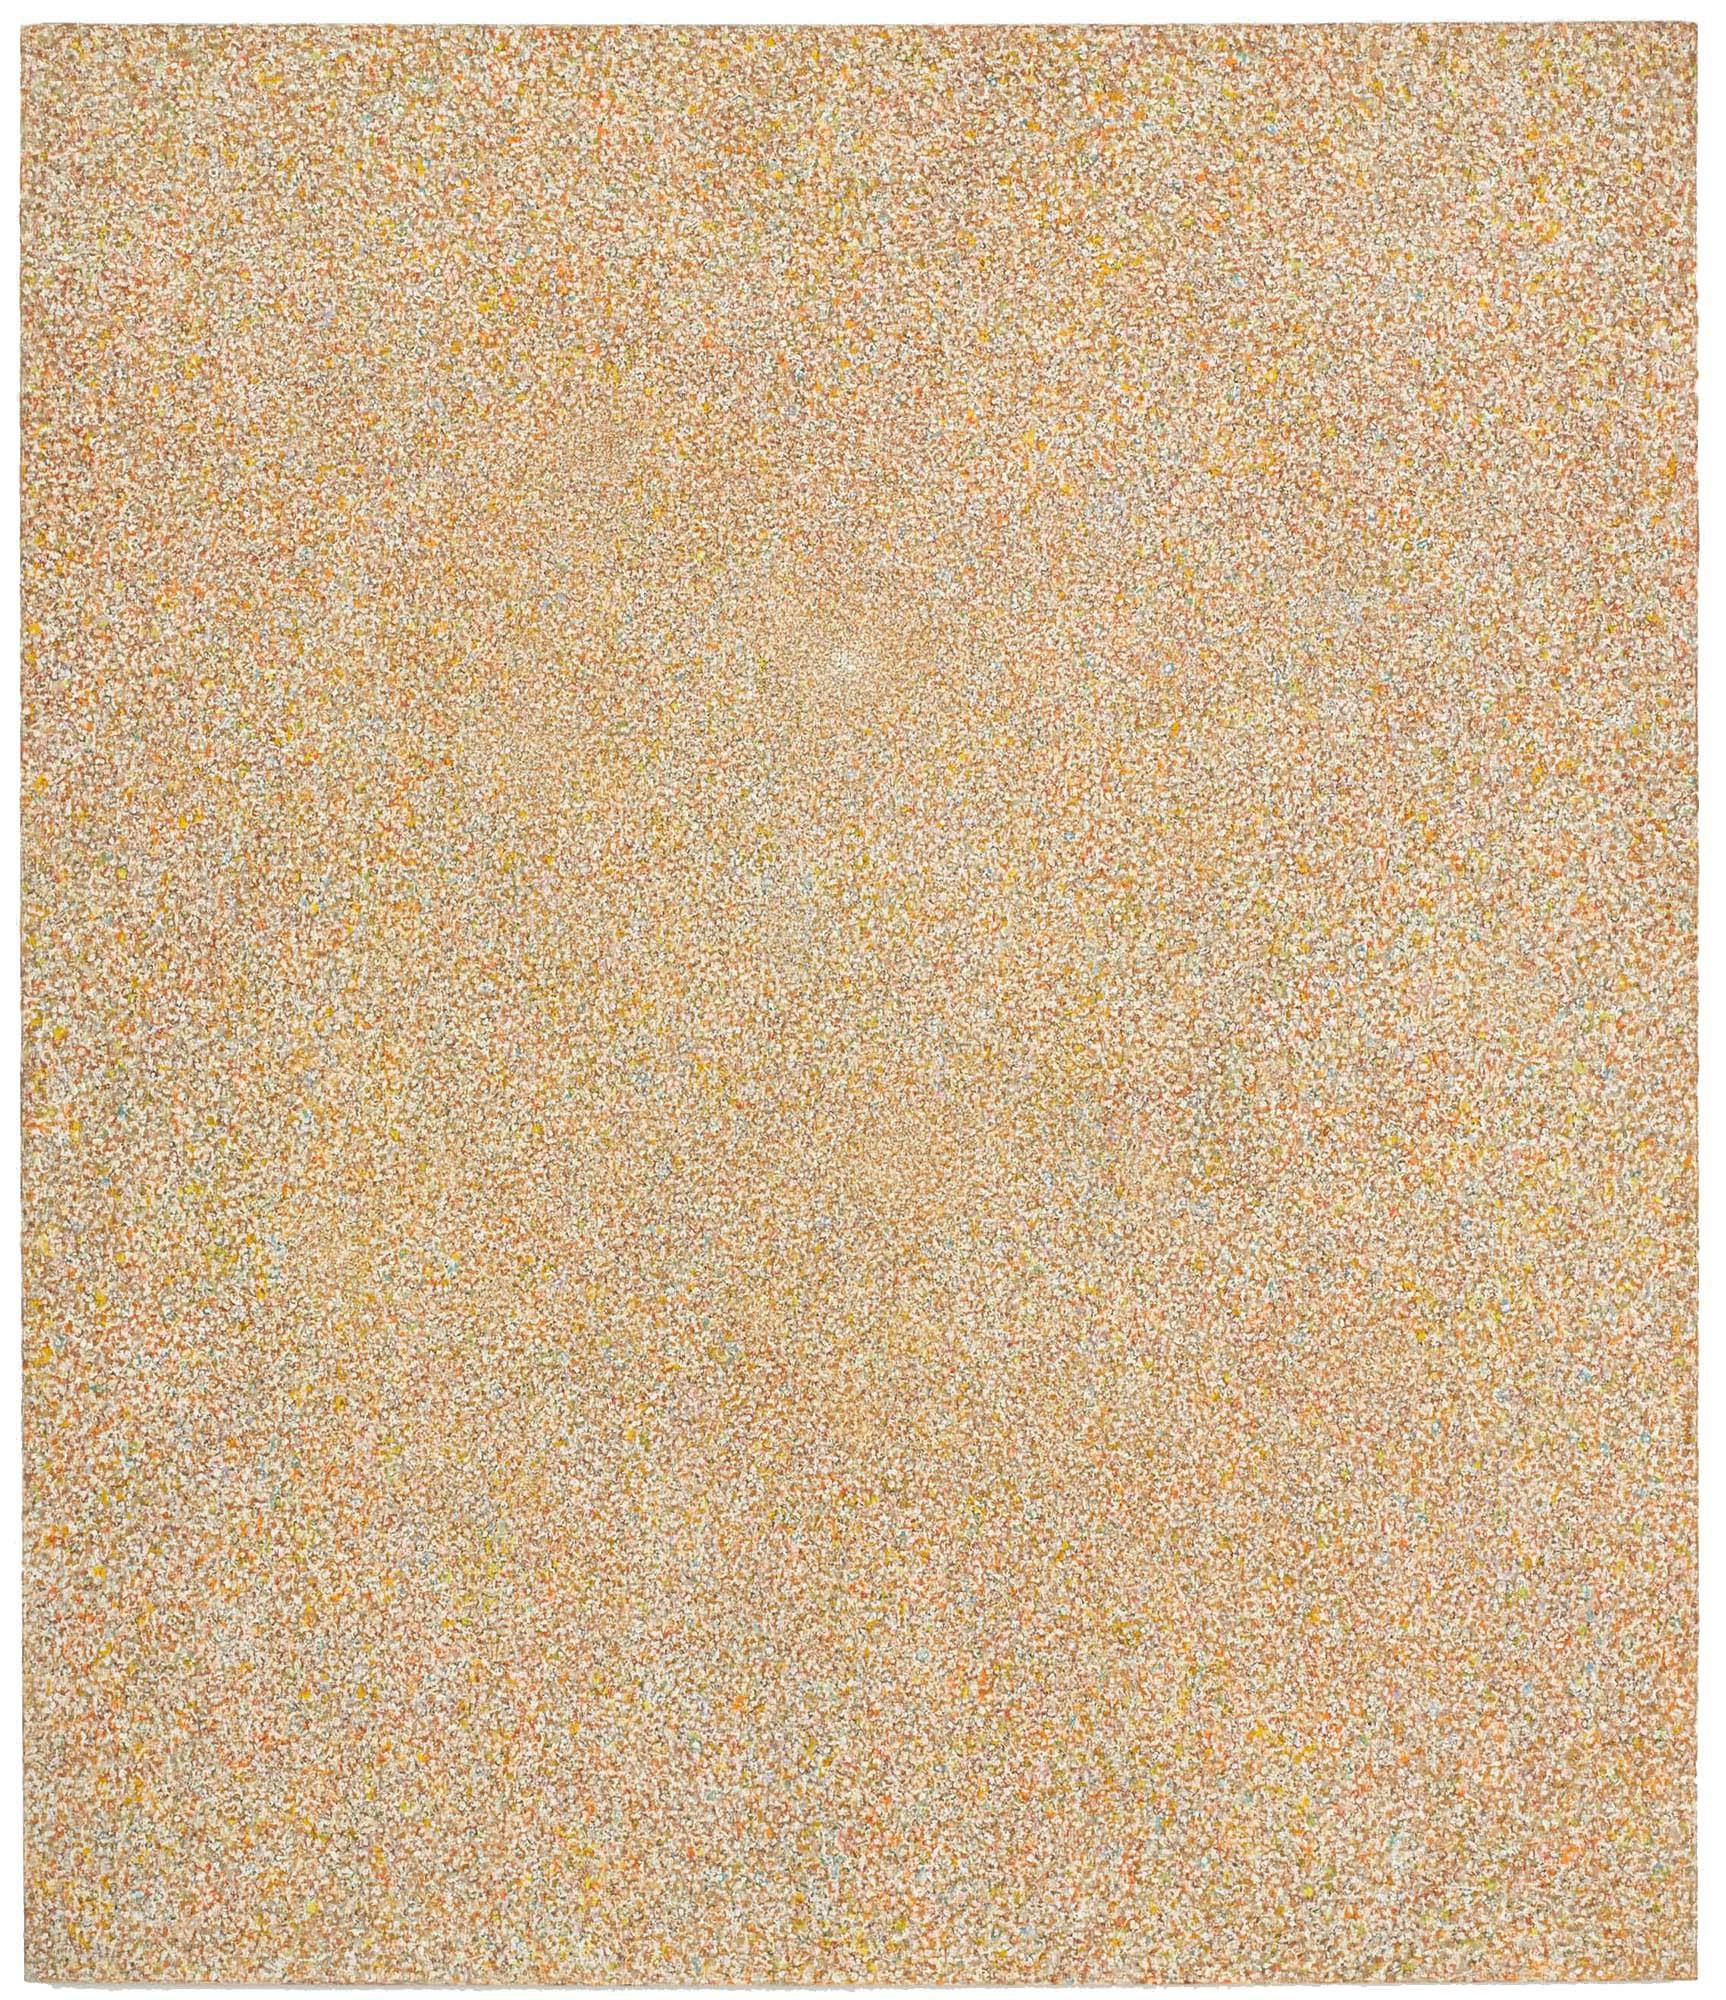 Golden Presence
1961
Oil on linen
76 x 65 in. (193 x 165.1 cm)
 – The Richard Pousette-Dart Foundation